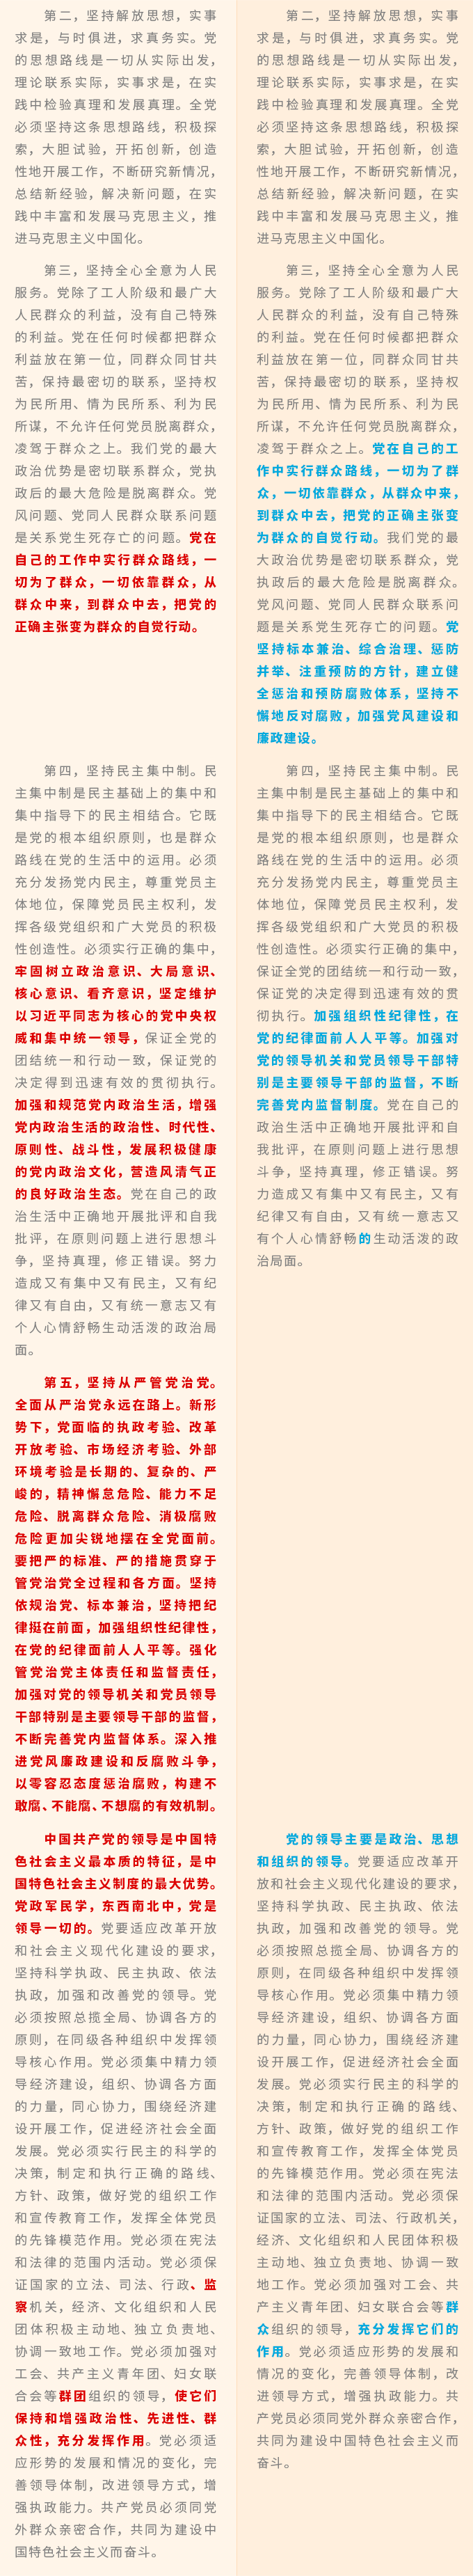 中国共产党章程6.png